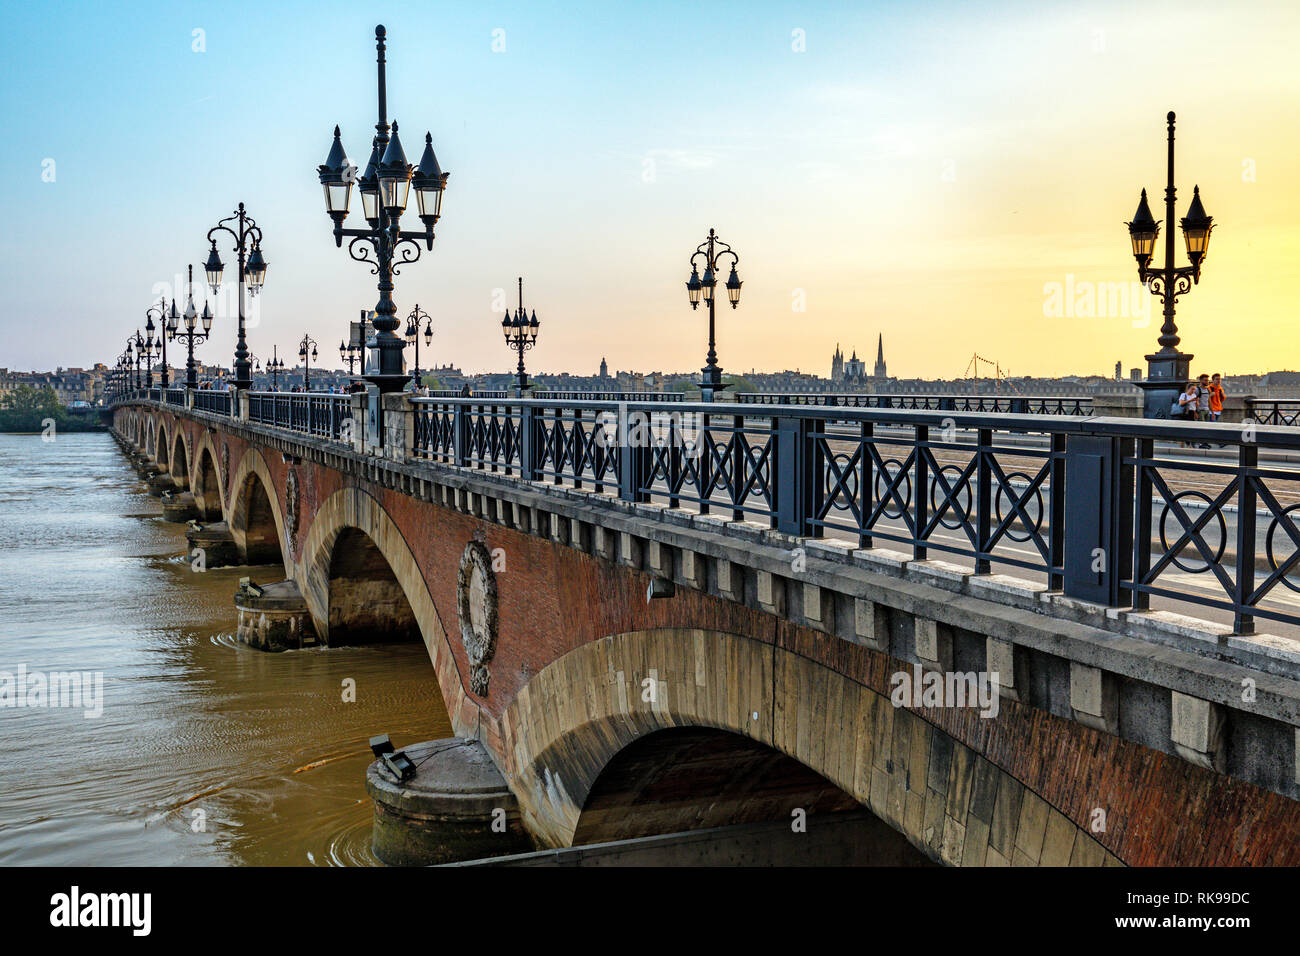 Pont de Pierre, historical bridge over the Garonne river at sunset, Bordeaux, France Stock Photo